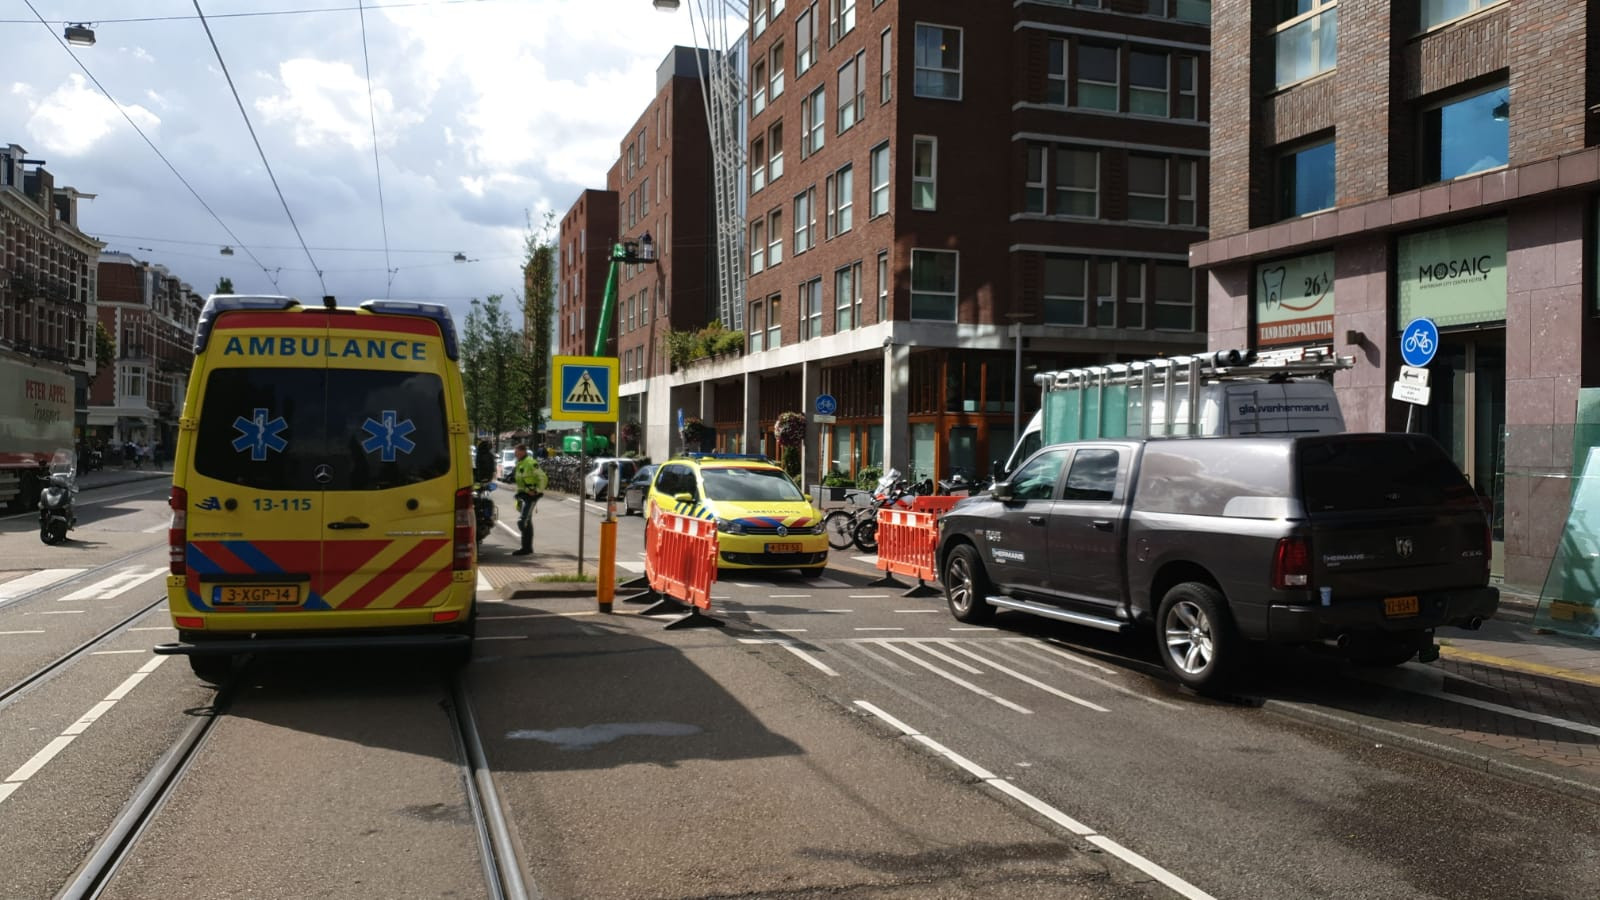 gewonde bij ongeluk in pand Eerste Constantijn Huygensstraat